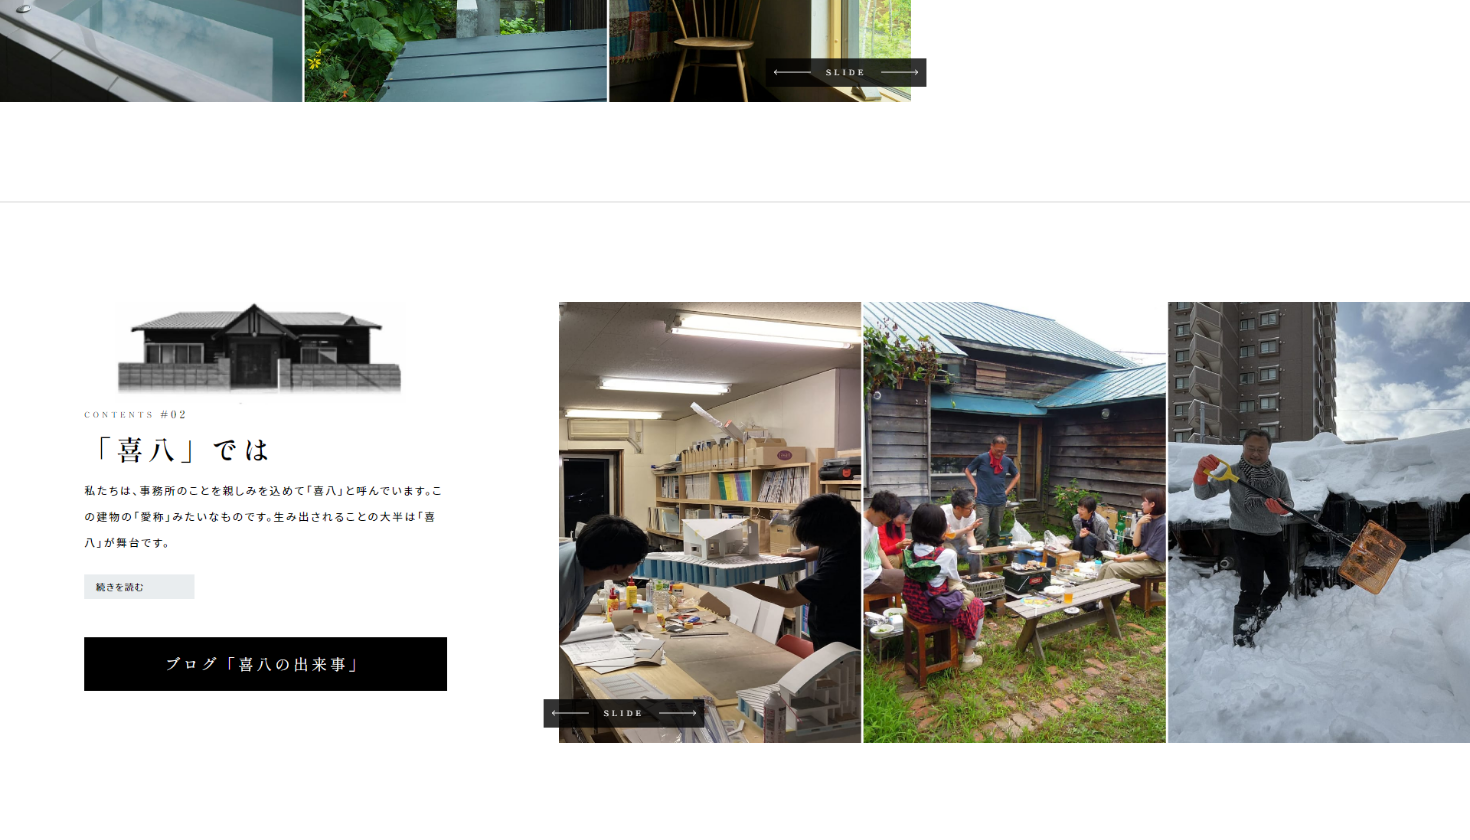 「堀尾浩建築設計事務所」様サイトのページ画像1